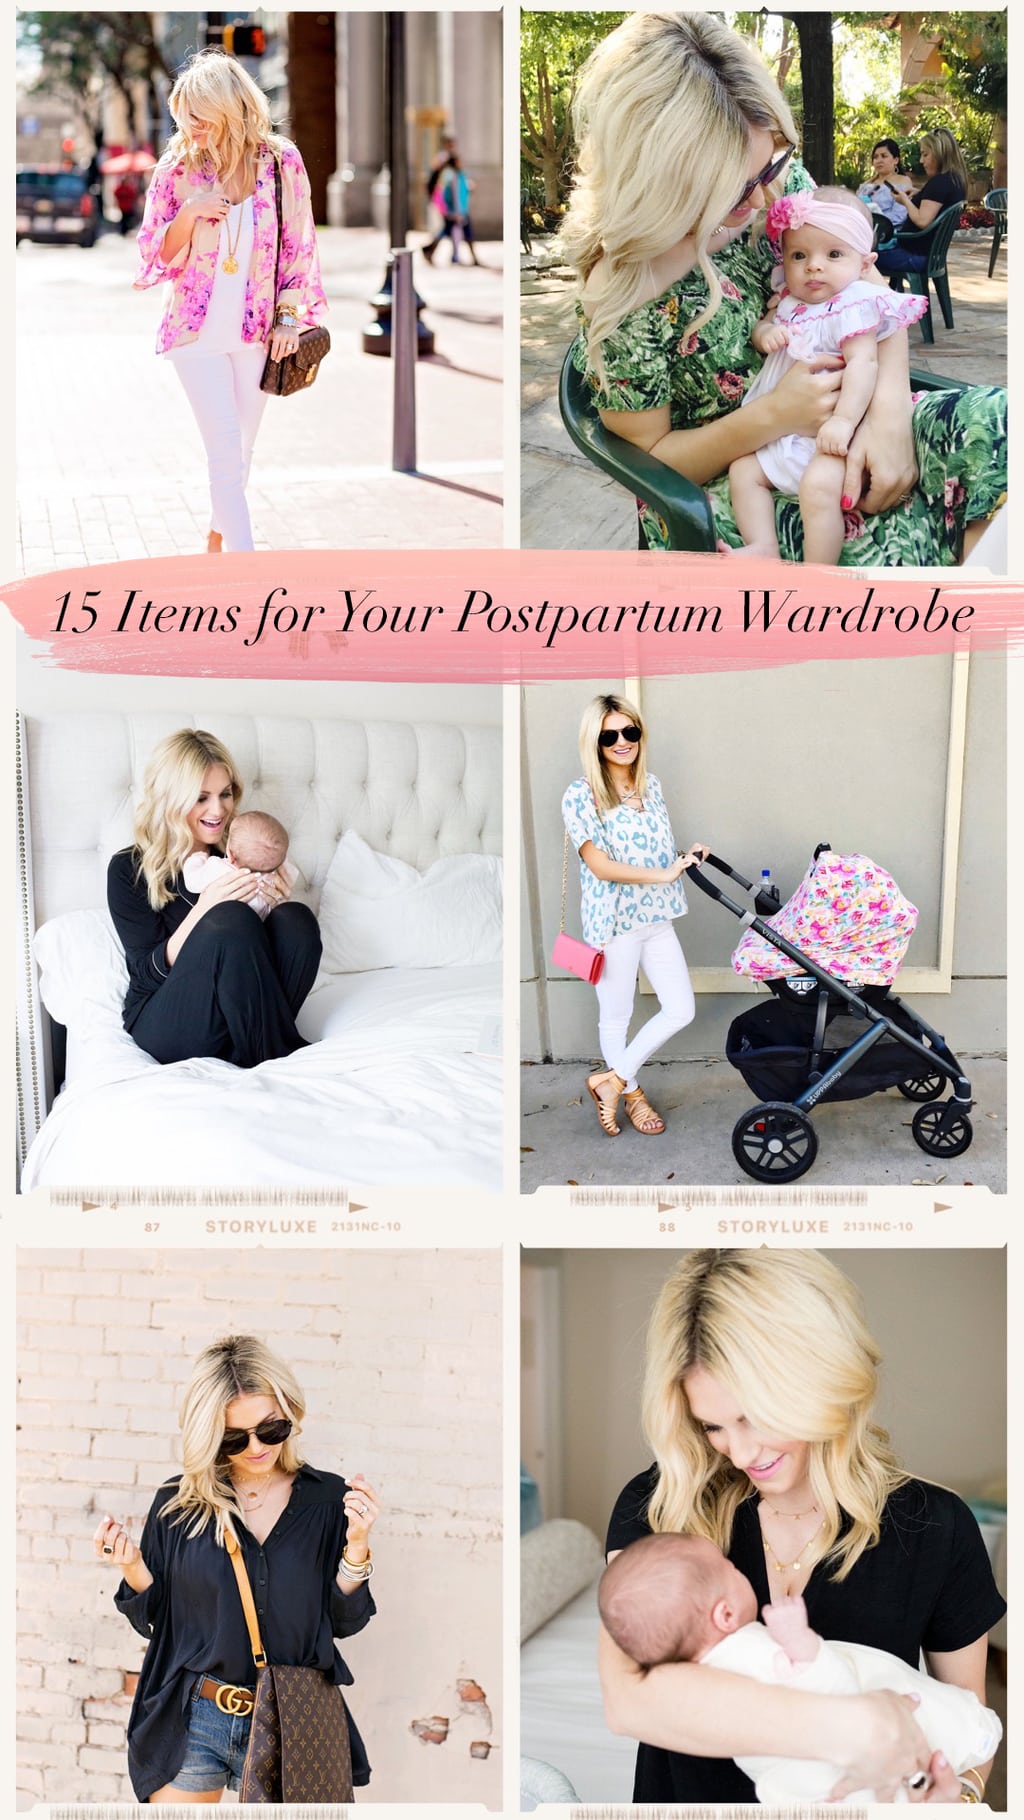 10 Cute Postpartum Outfit Ideas: Nursing-Friendly Tops + Linen